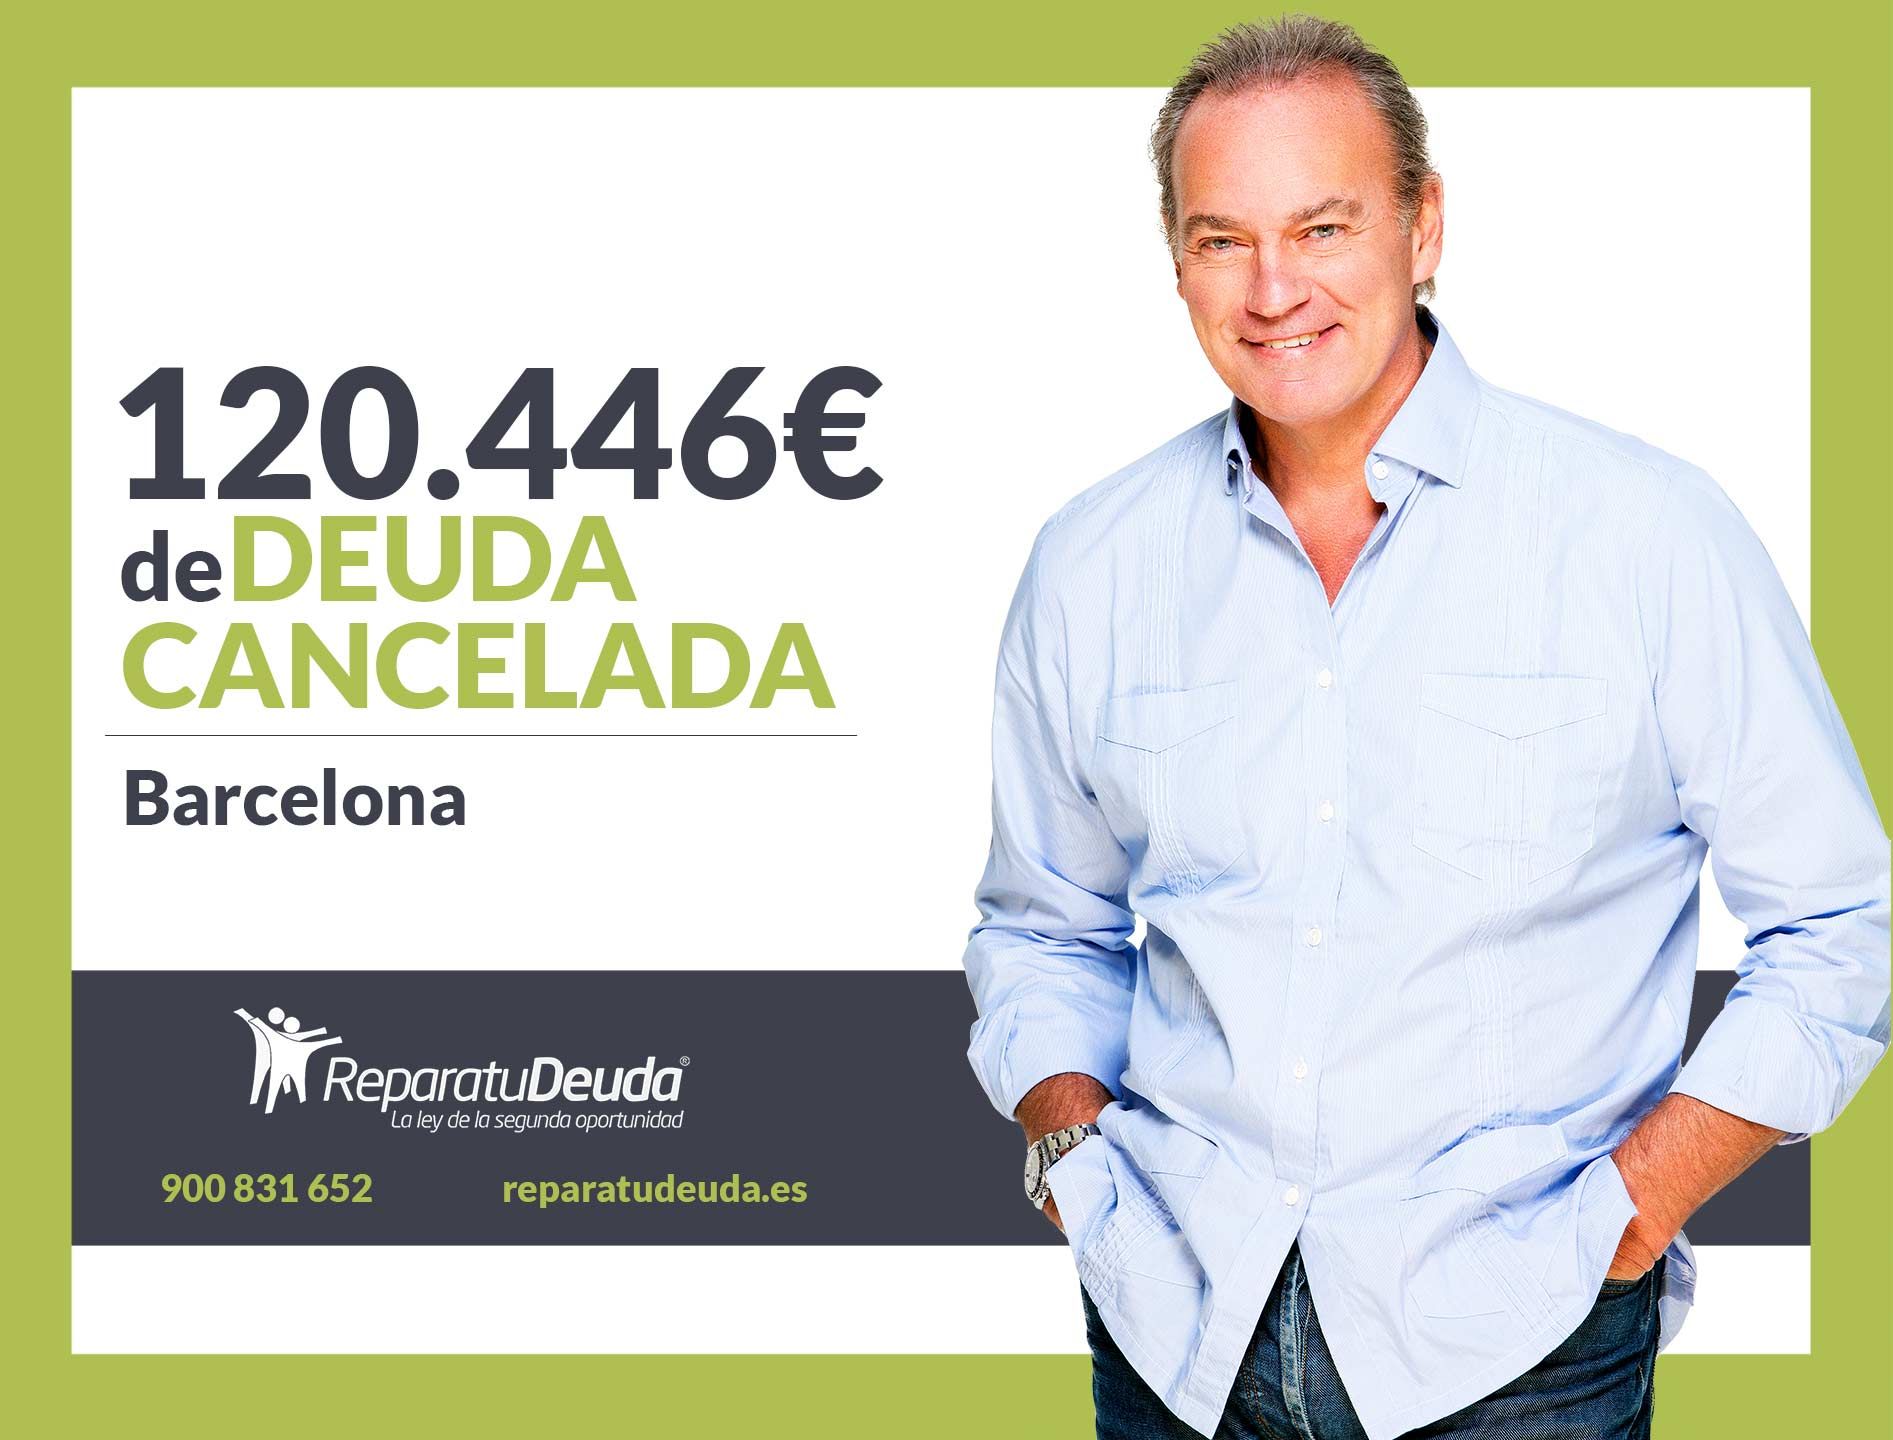 Repara tu Deuda Abogados cancela 120.446 euros en Barcelona (Catalunya) con la Ley de Segunda Oportunidad